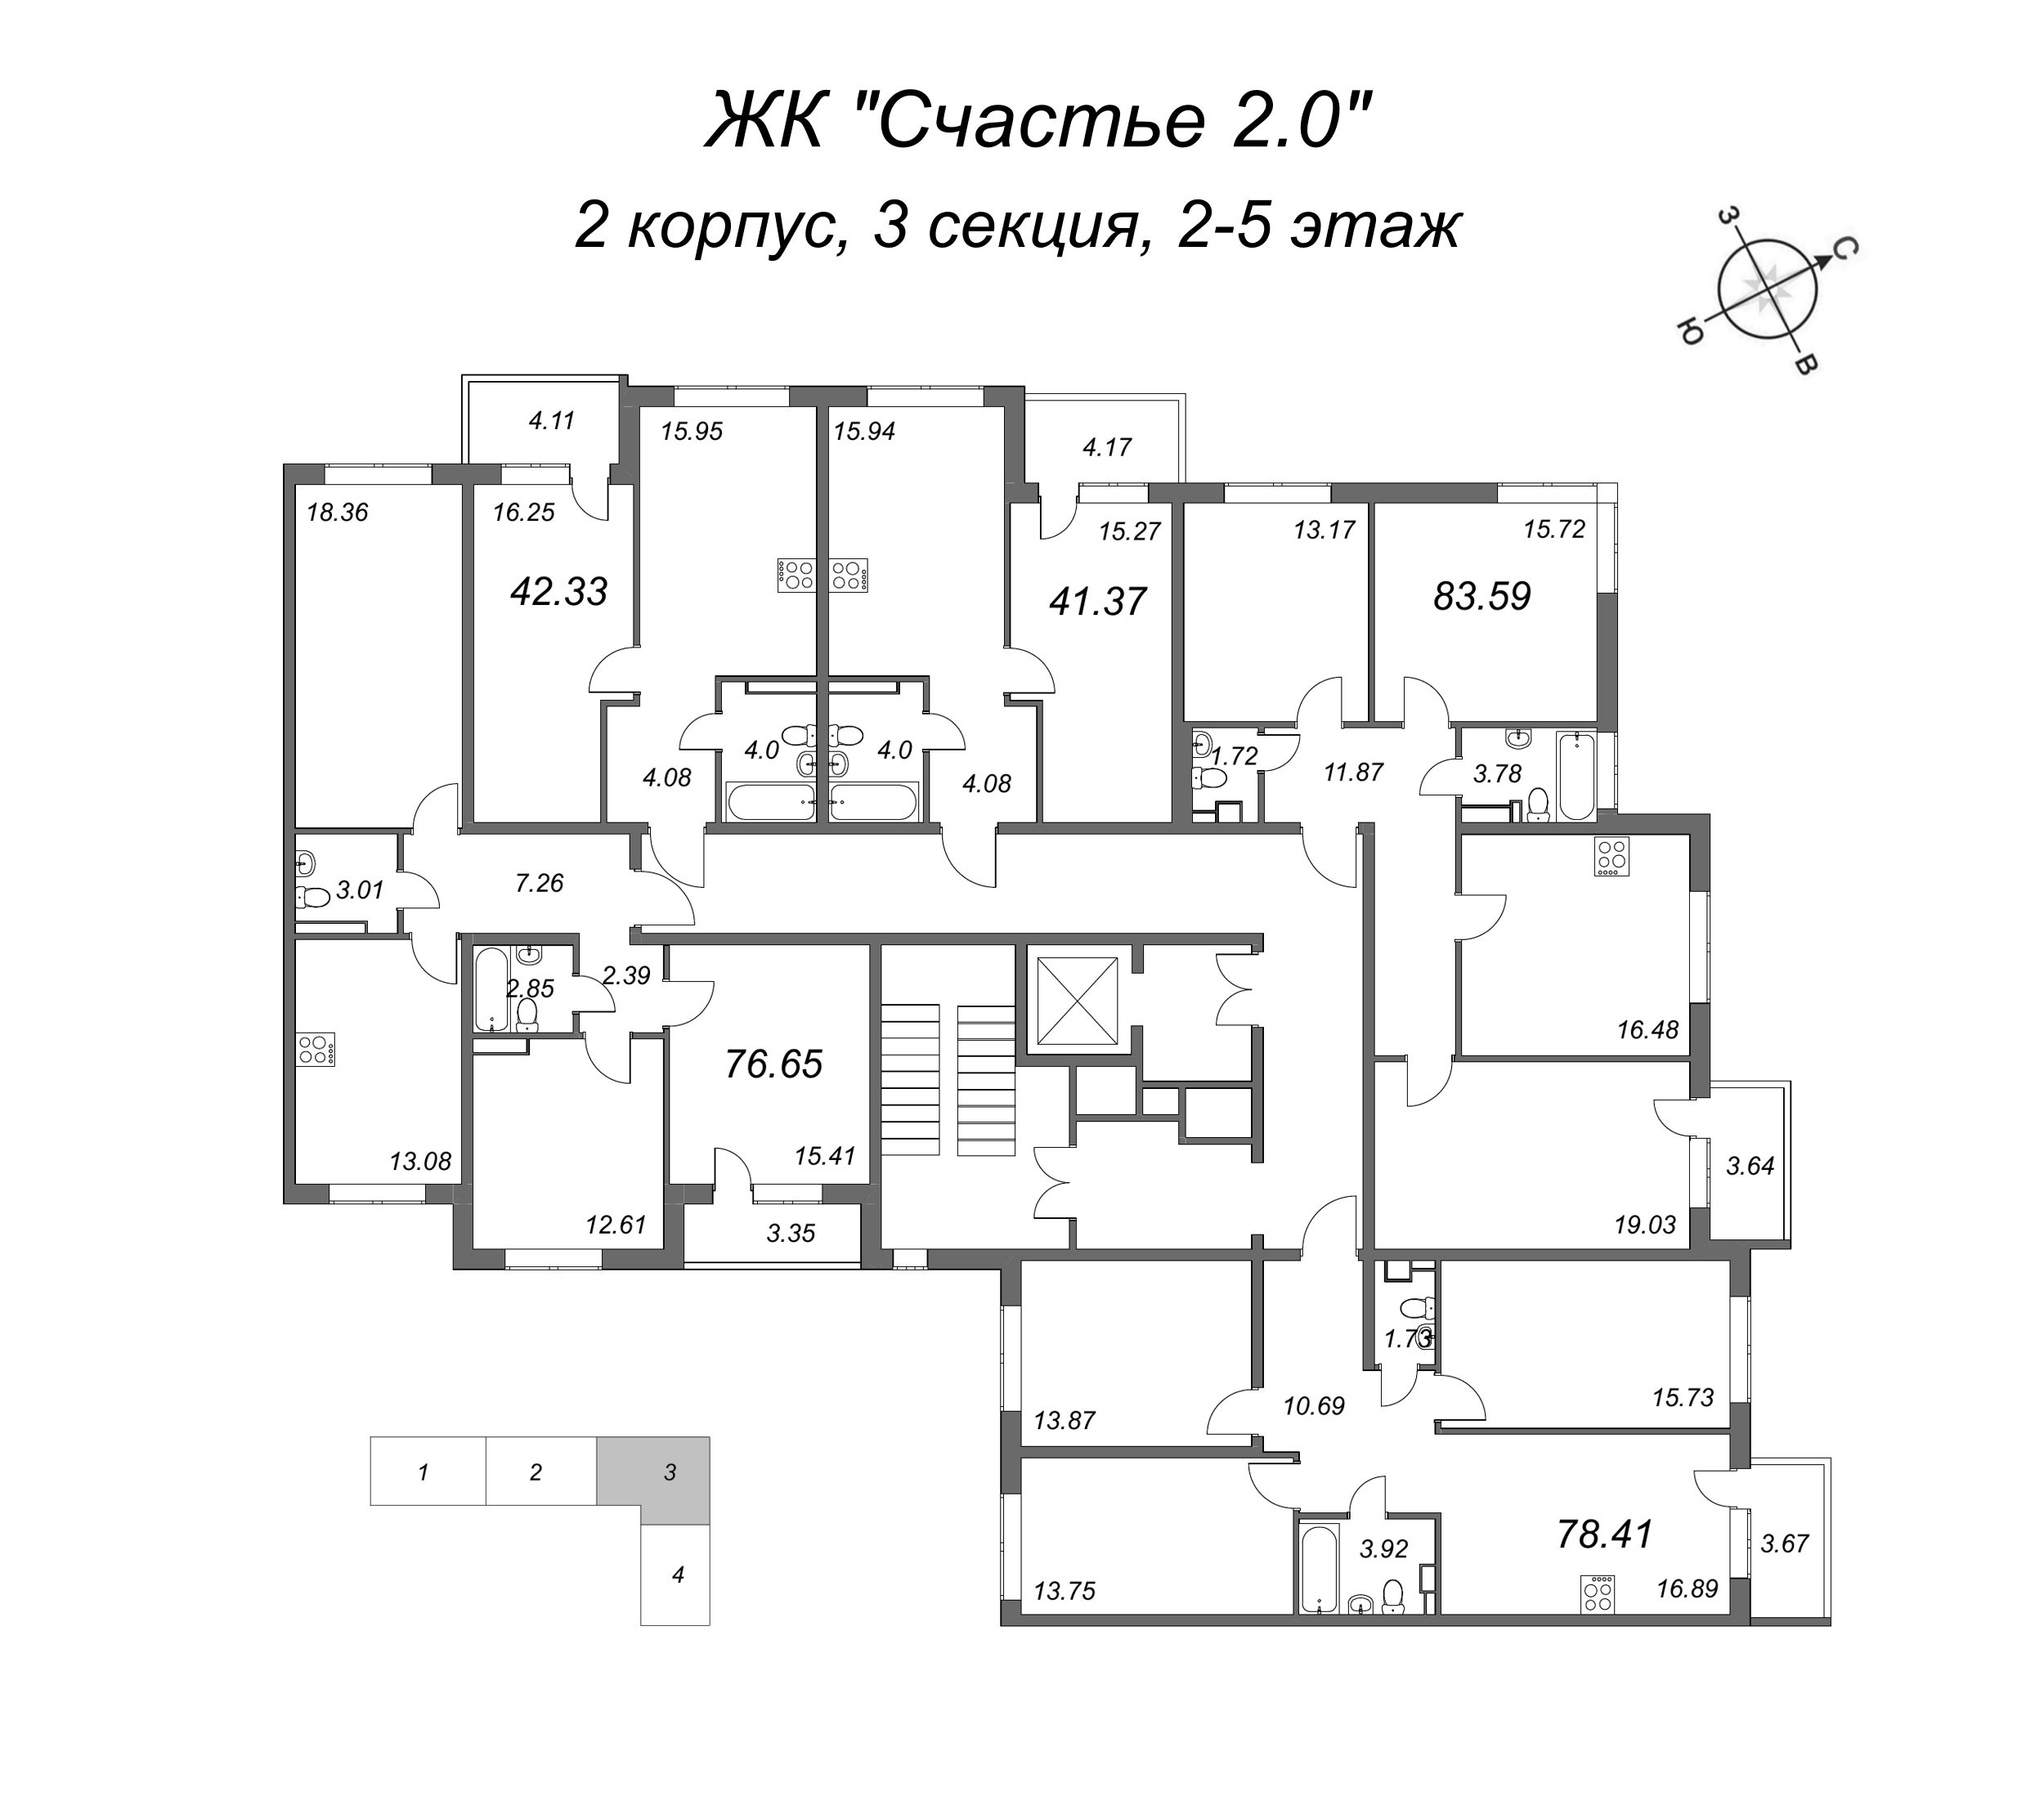 3-комнатная квартира, 79.6 м² в ЖК "Счастье 2.0" - планировка этажа